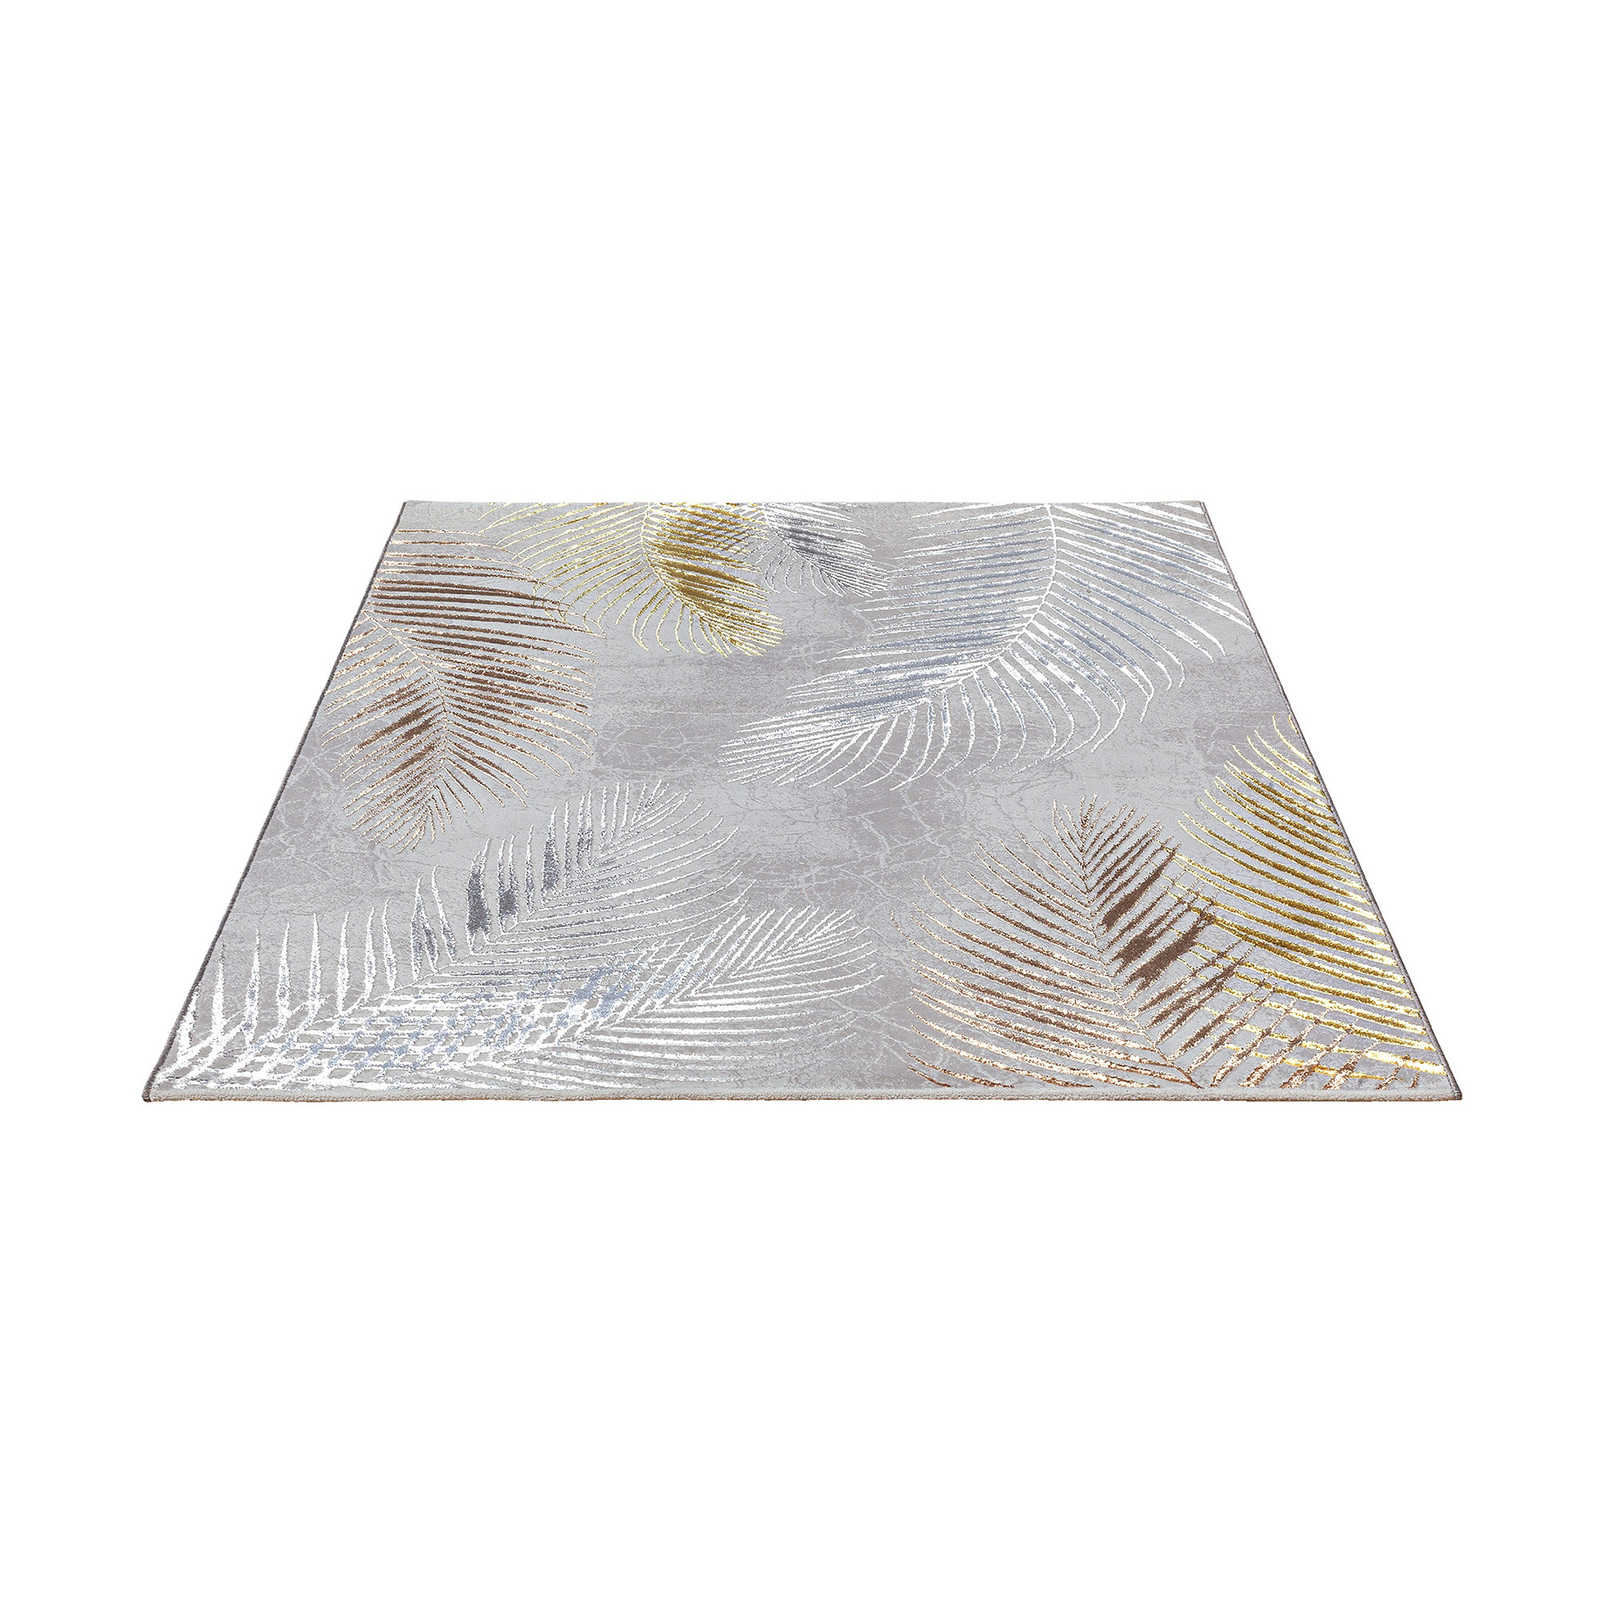 Knuffelzacht hoogpolig tapijt in grijs als loper - 290 x 200 cm
